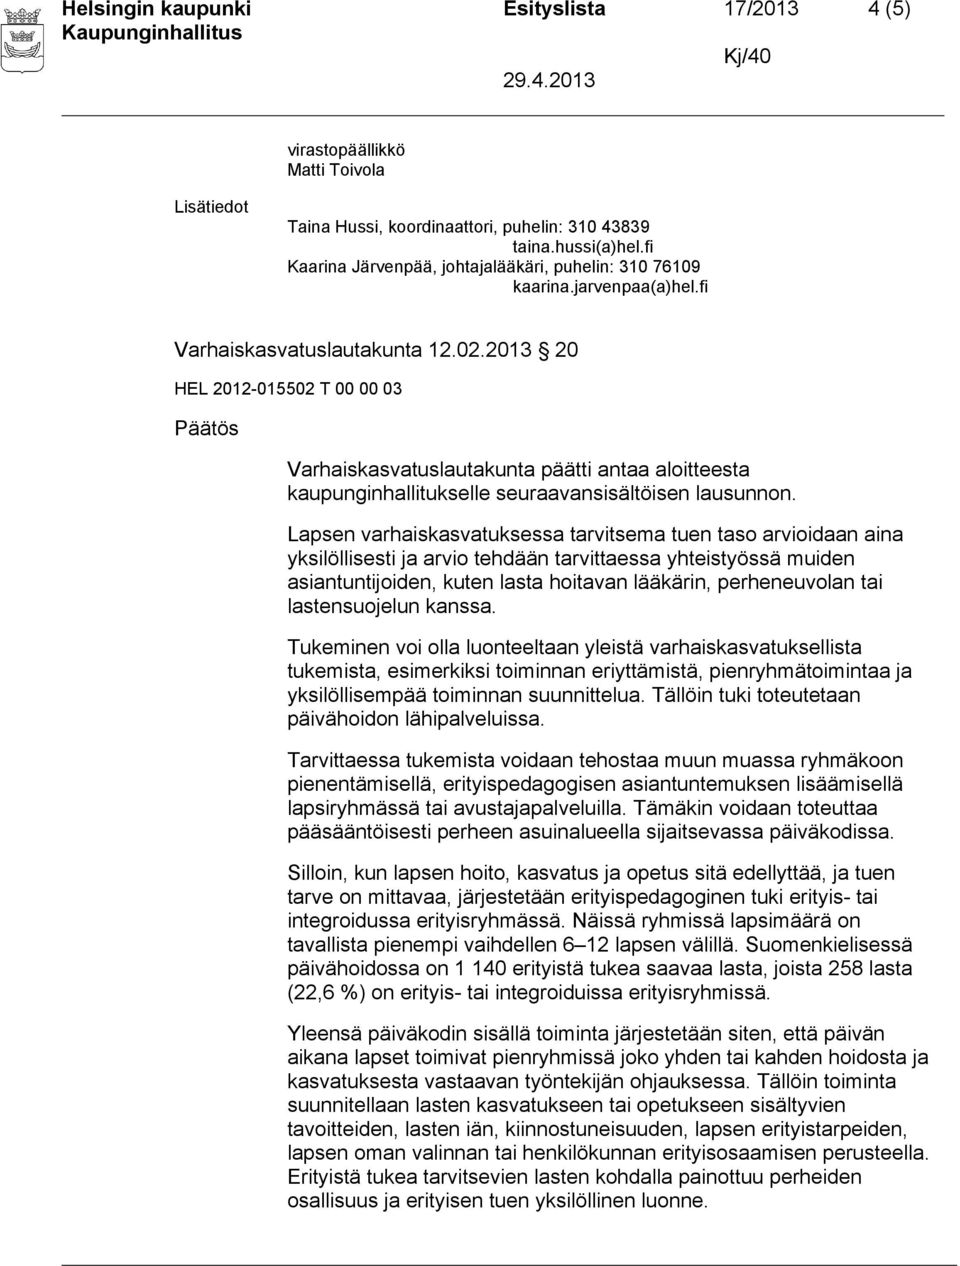 2013 20 Varhaiskasvatuslautakunta päätti antaa aloitteesta kaupunginhallitukselle seuraavansisältöisen lausunnon.